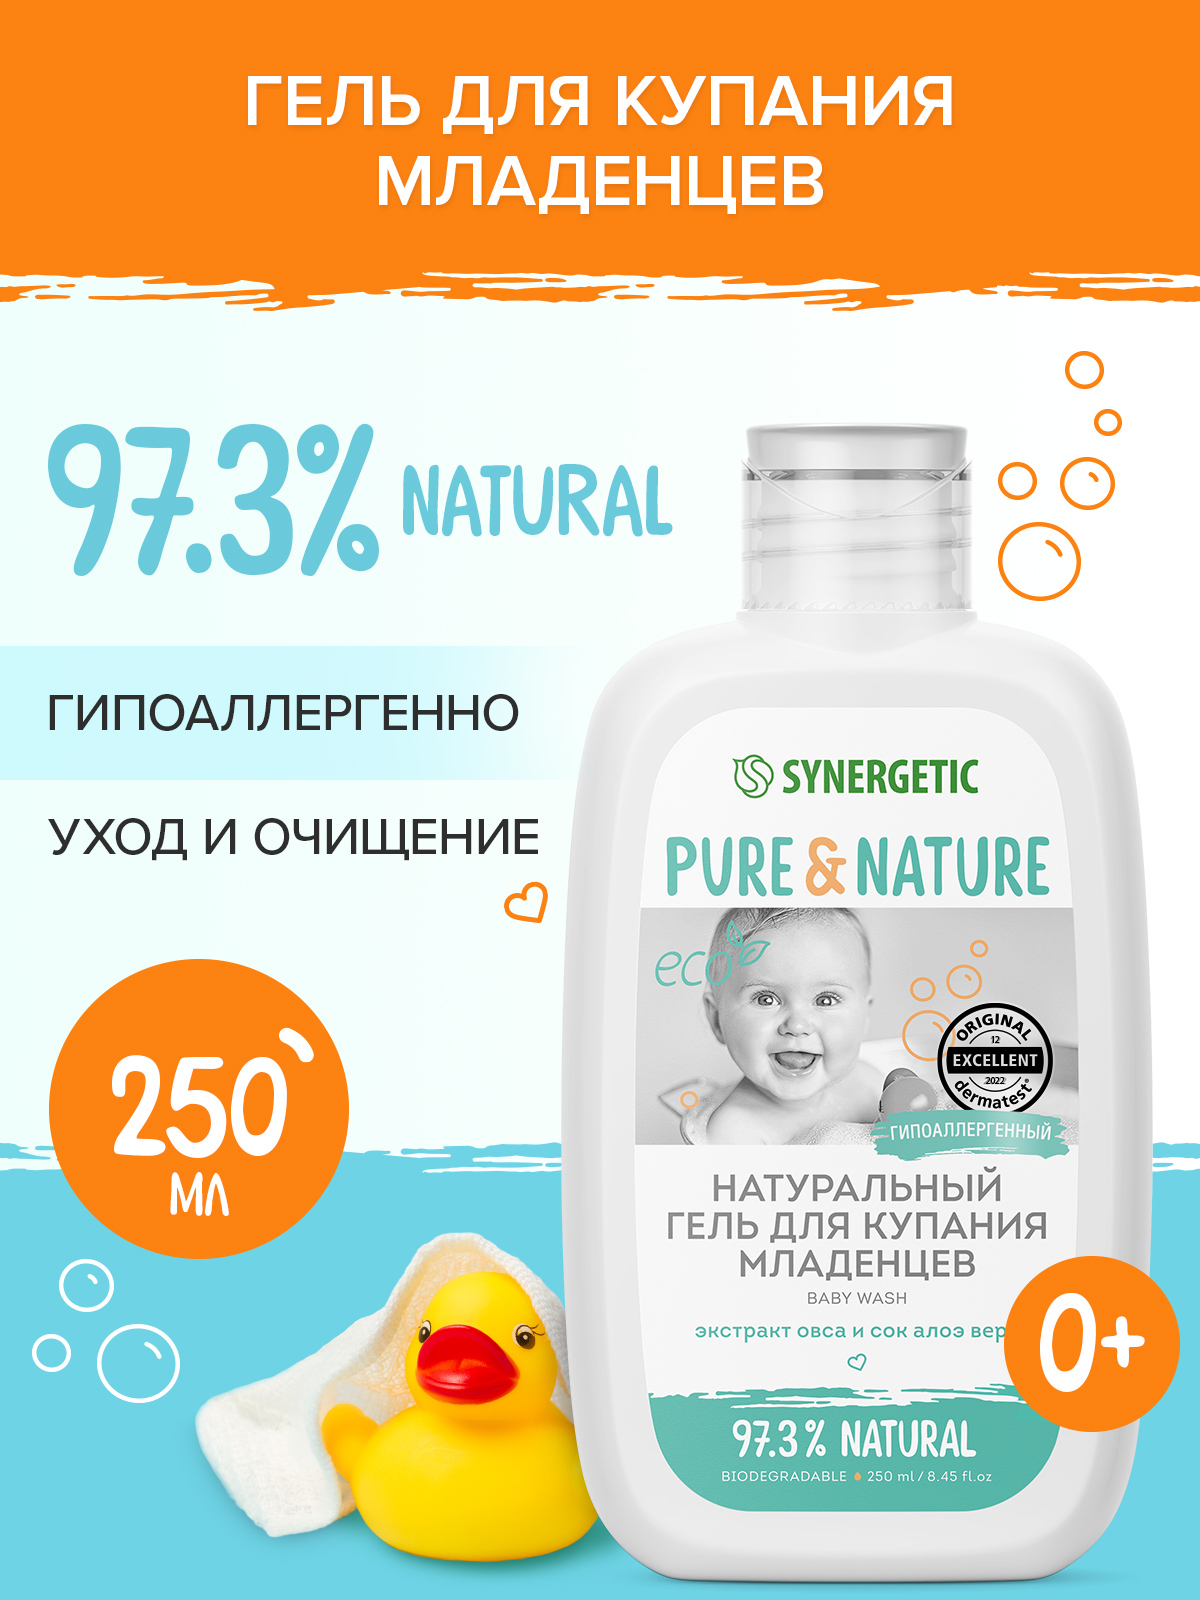 Натуральный гипоаллергенный гель для купания младенцев 0+ SYNERGETIC, 250мл гель для купания буба ягодный микс 250мл заботливая мама 63466 buba m